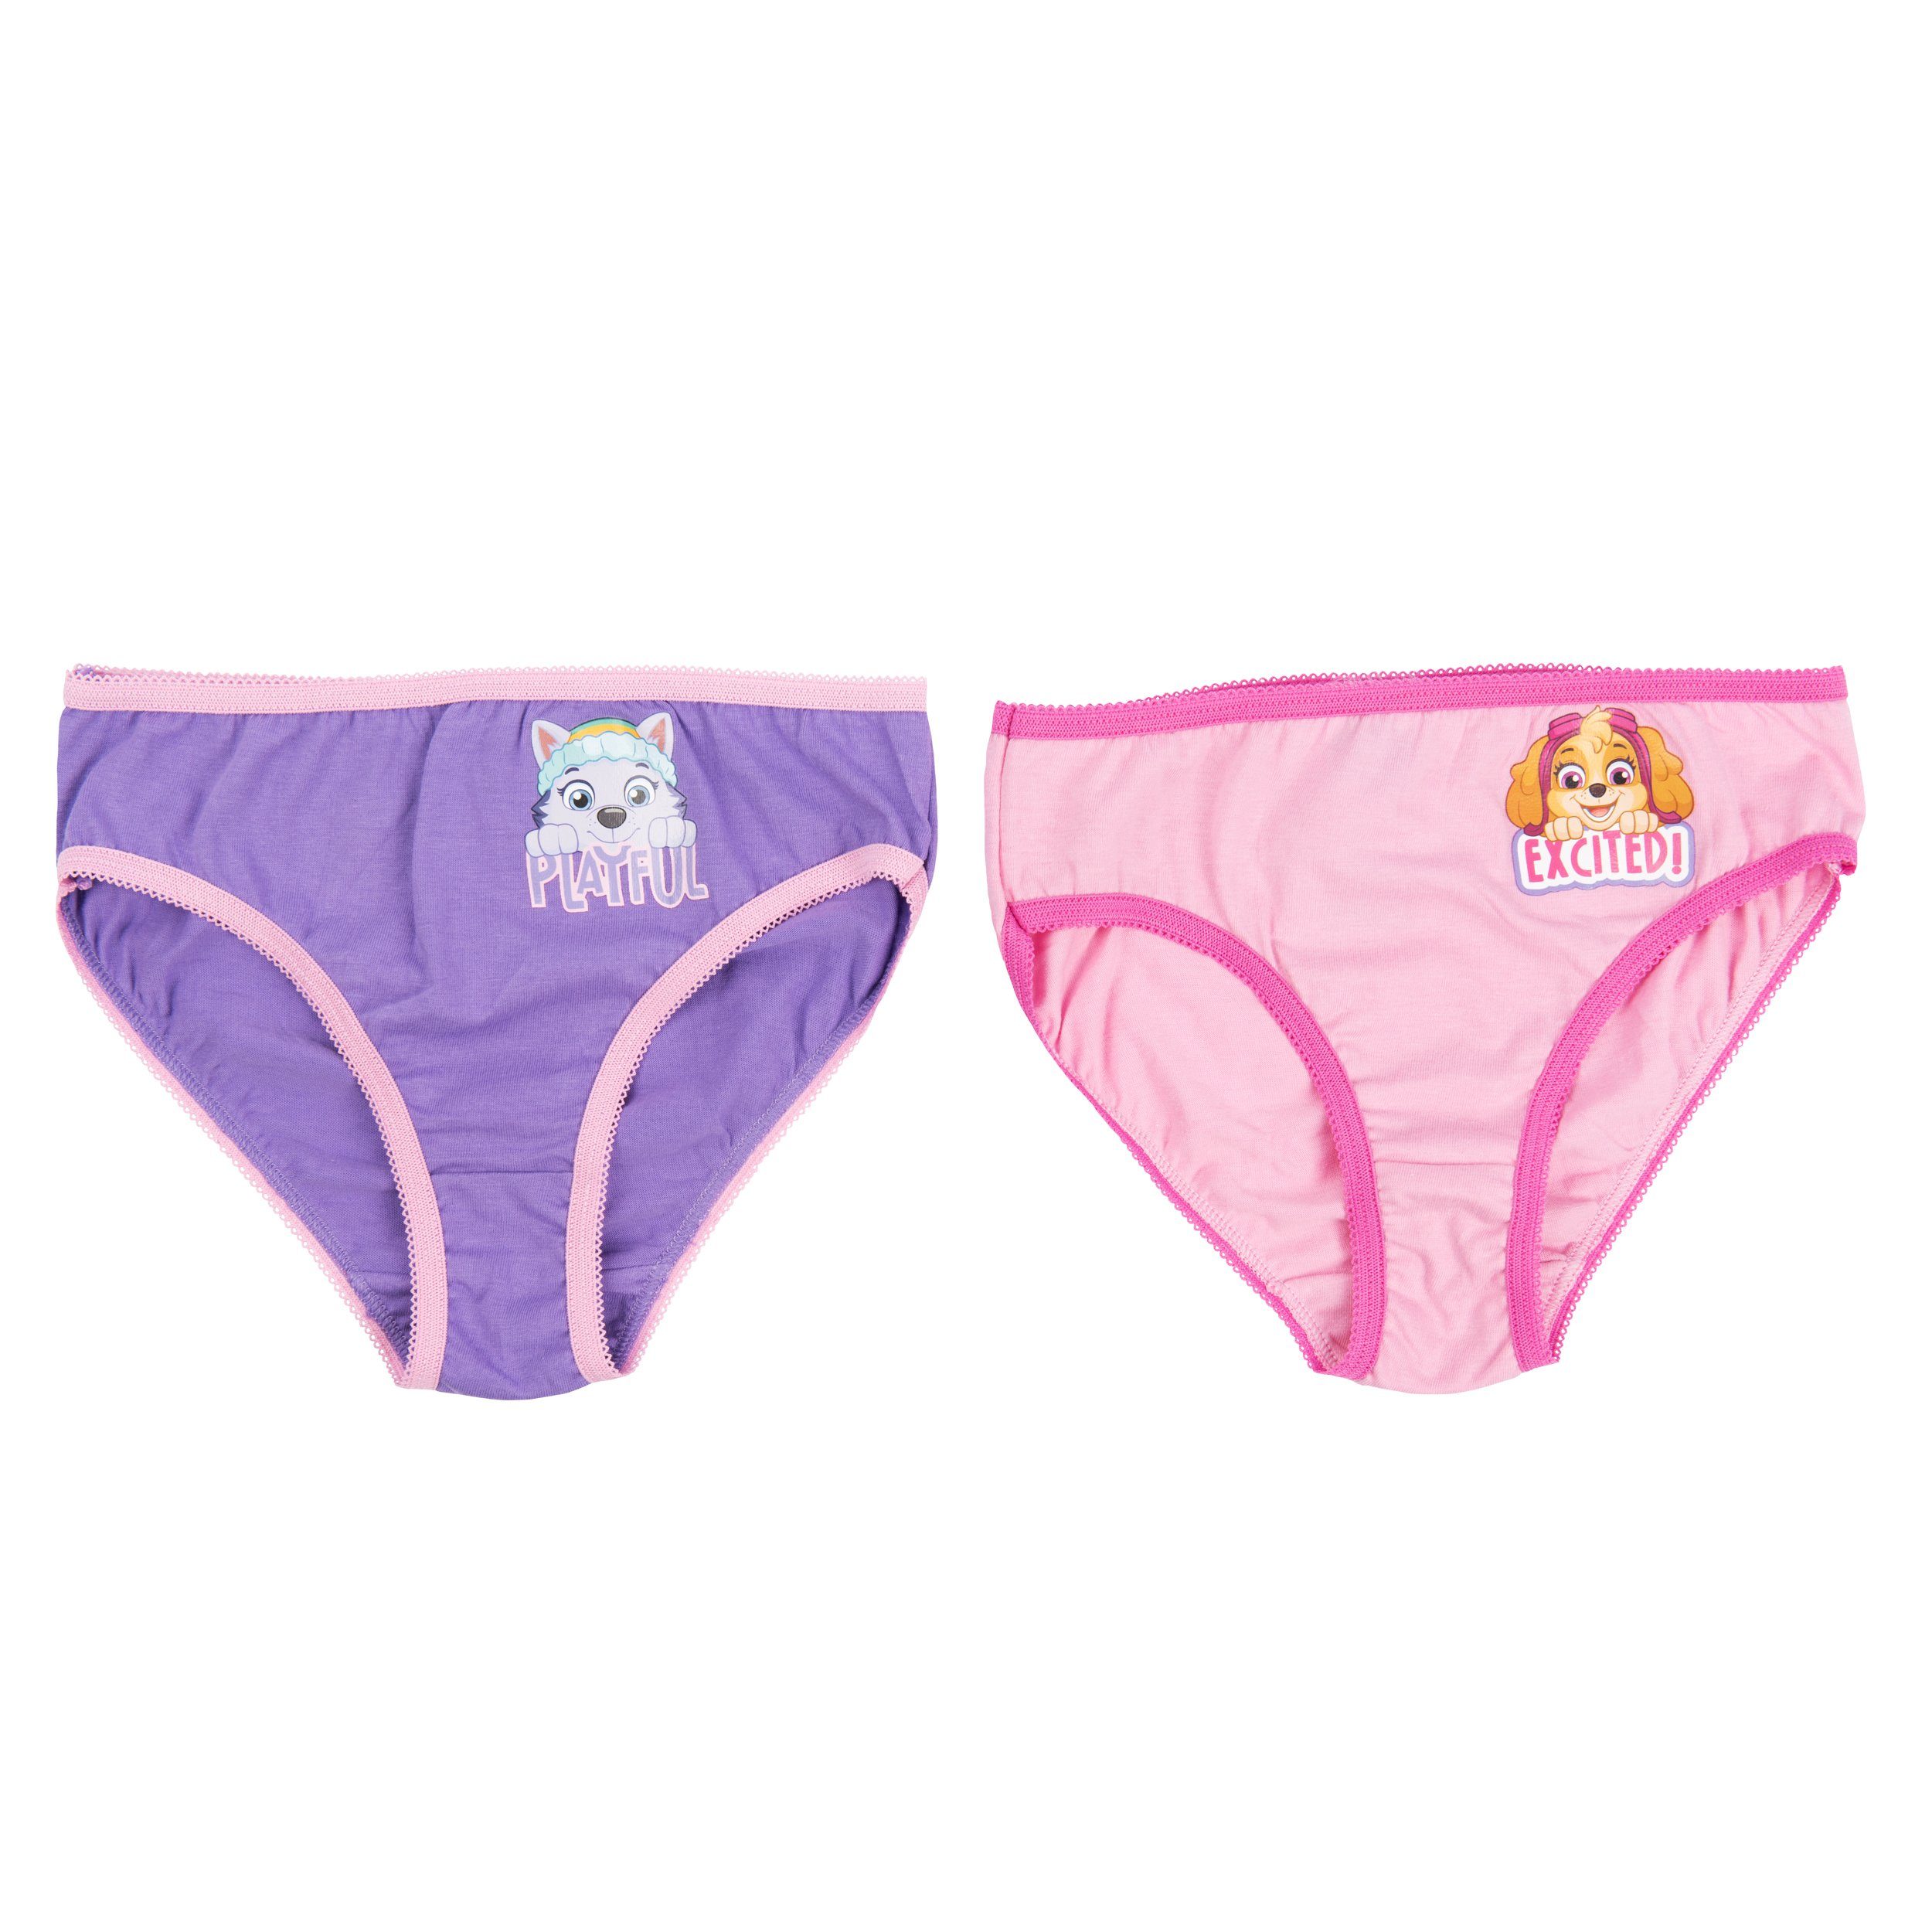 für Pack) United Panty Labels® Unterhose Unterwäsche Mädchen Lila/Rosa Paw Patrol (2er